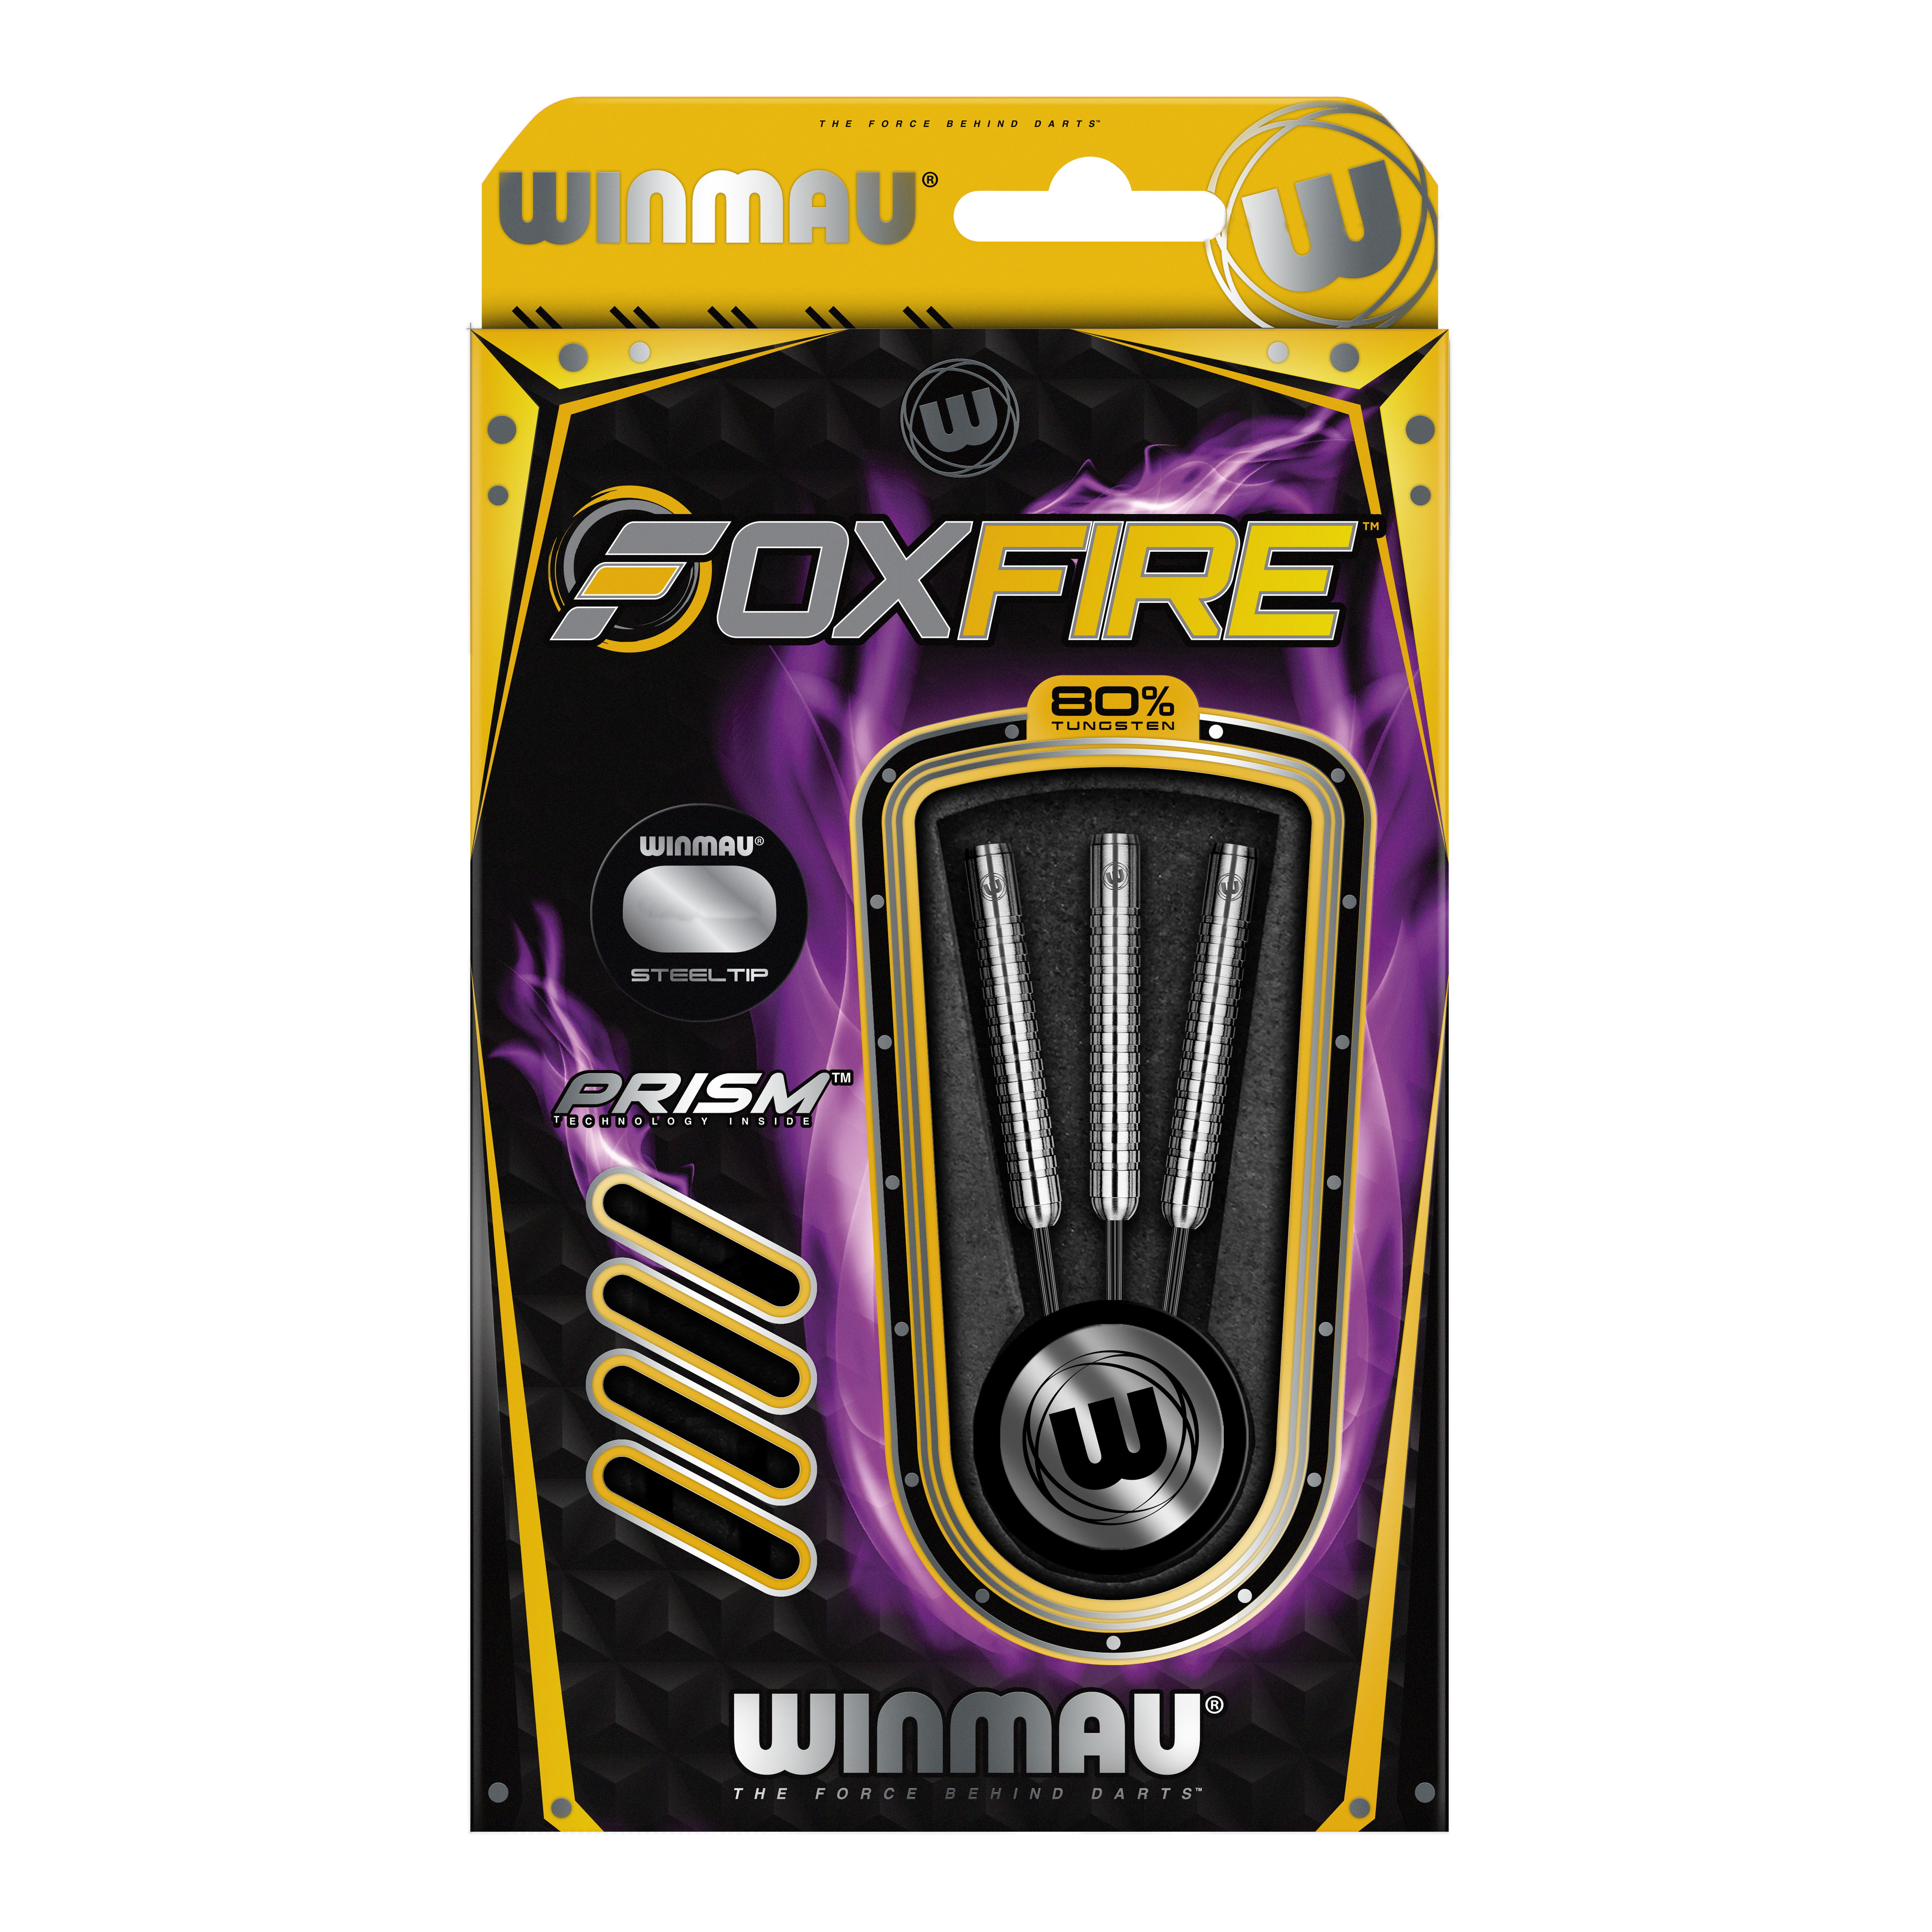 Winmau Foxfire steel darts